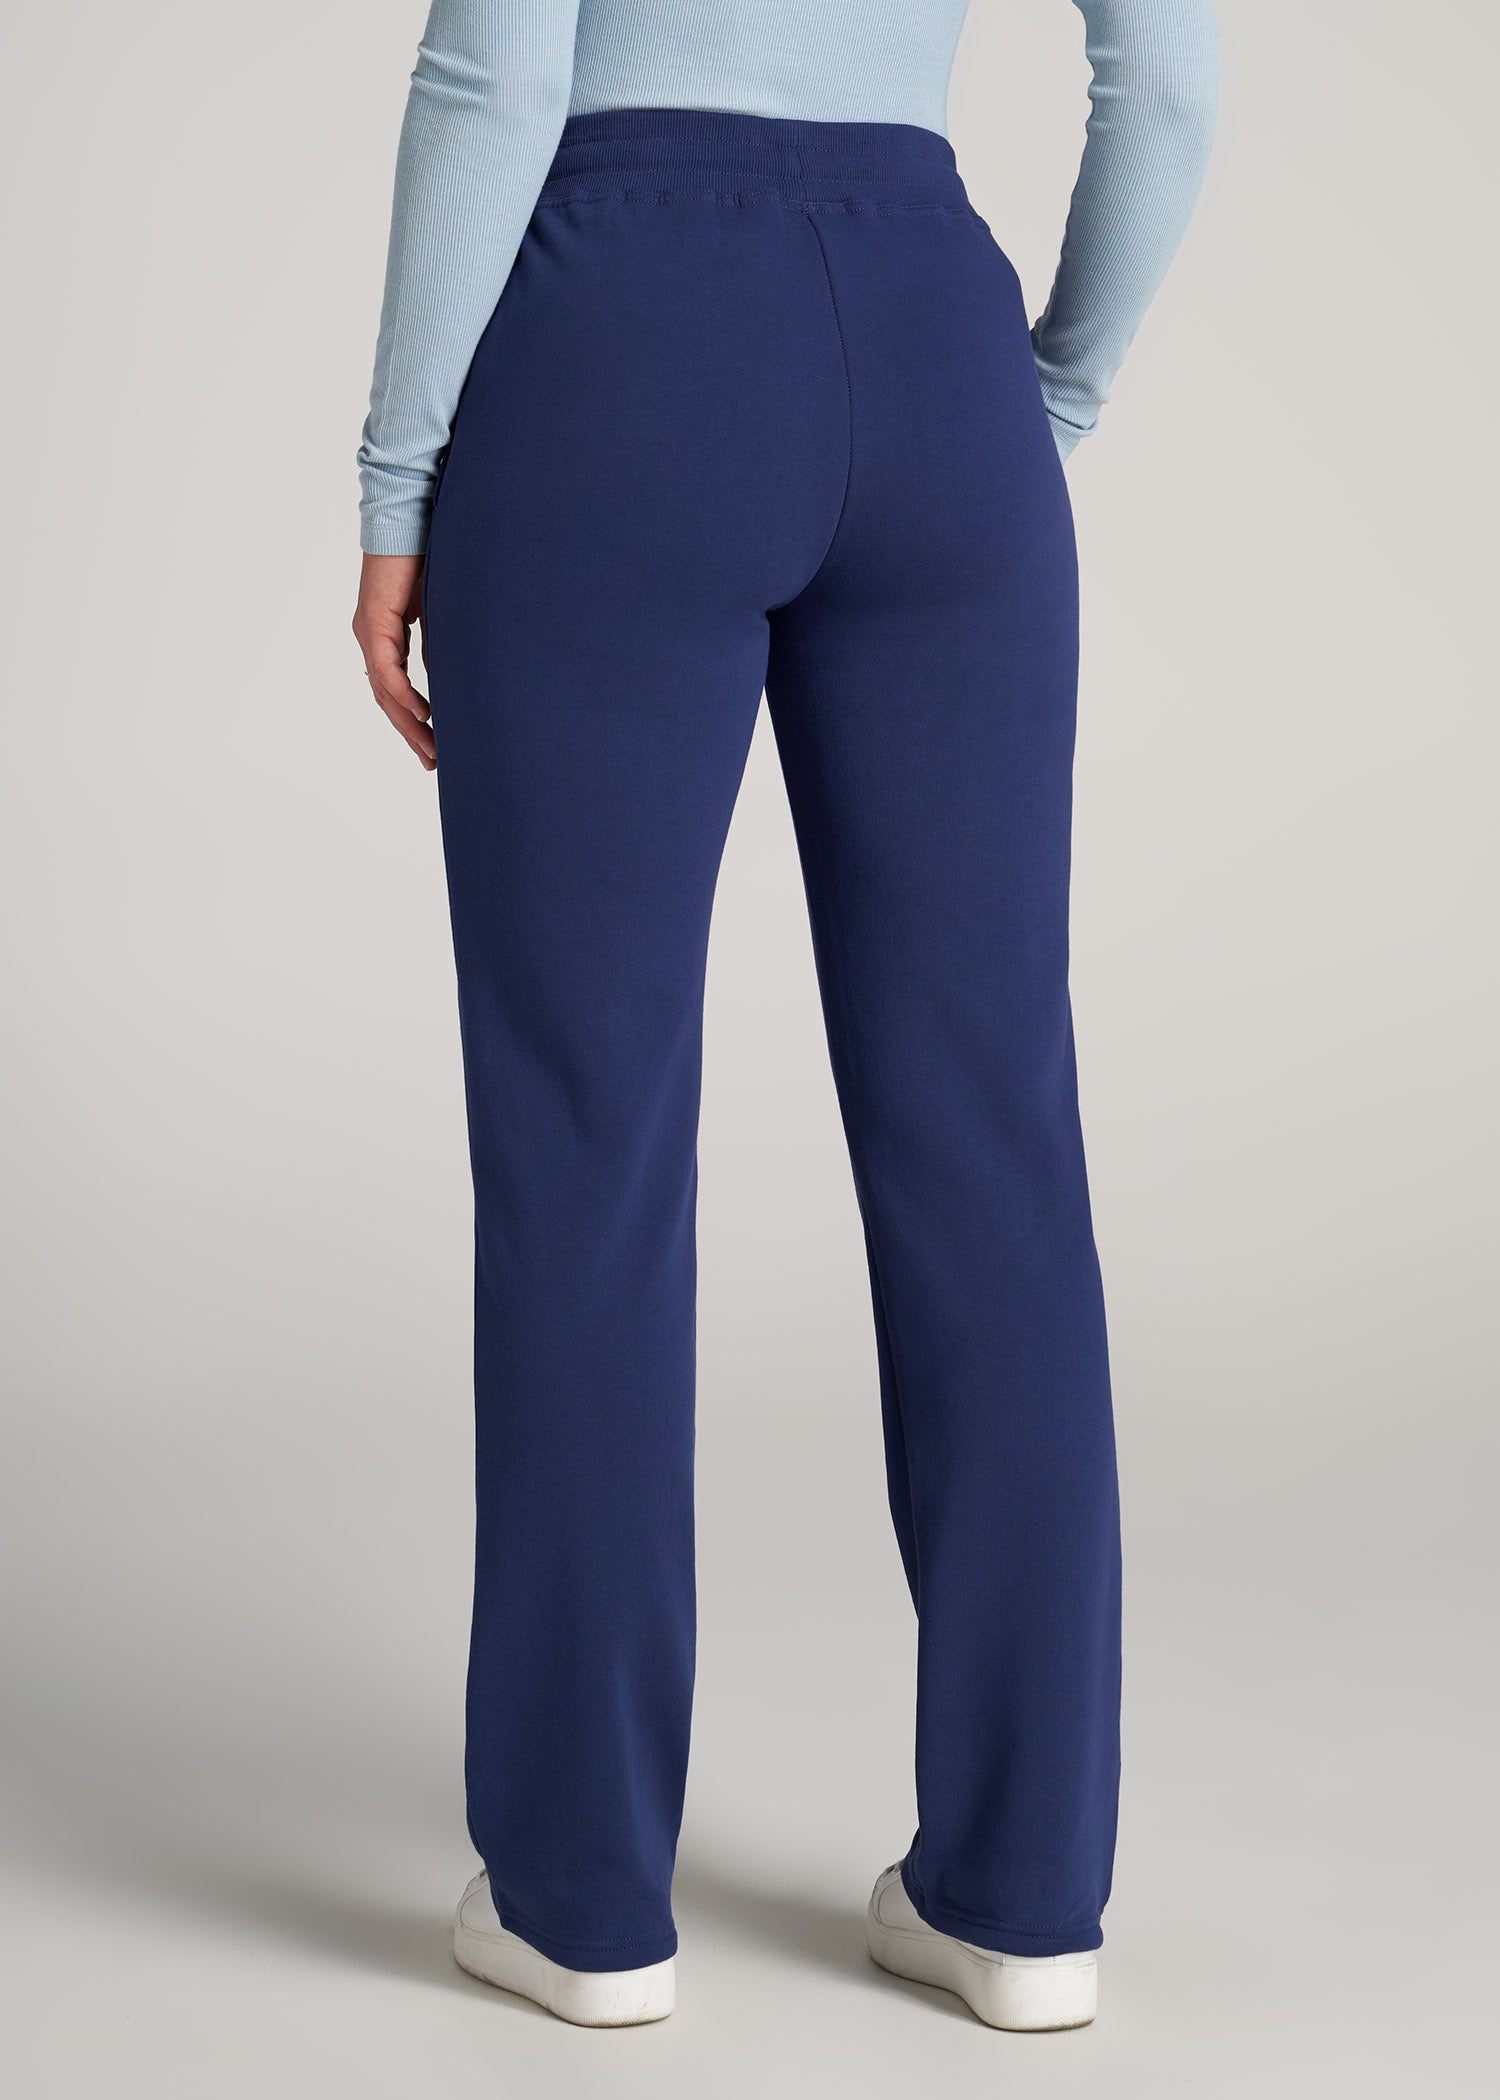 Tall Sweatpants for Women: Fleece Open Bottom Pants Black